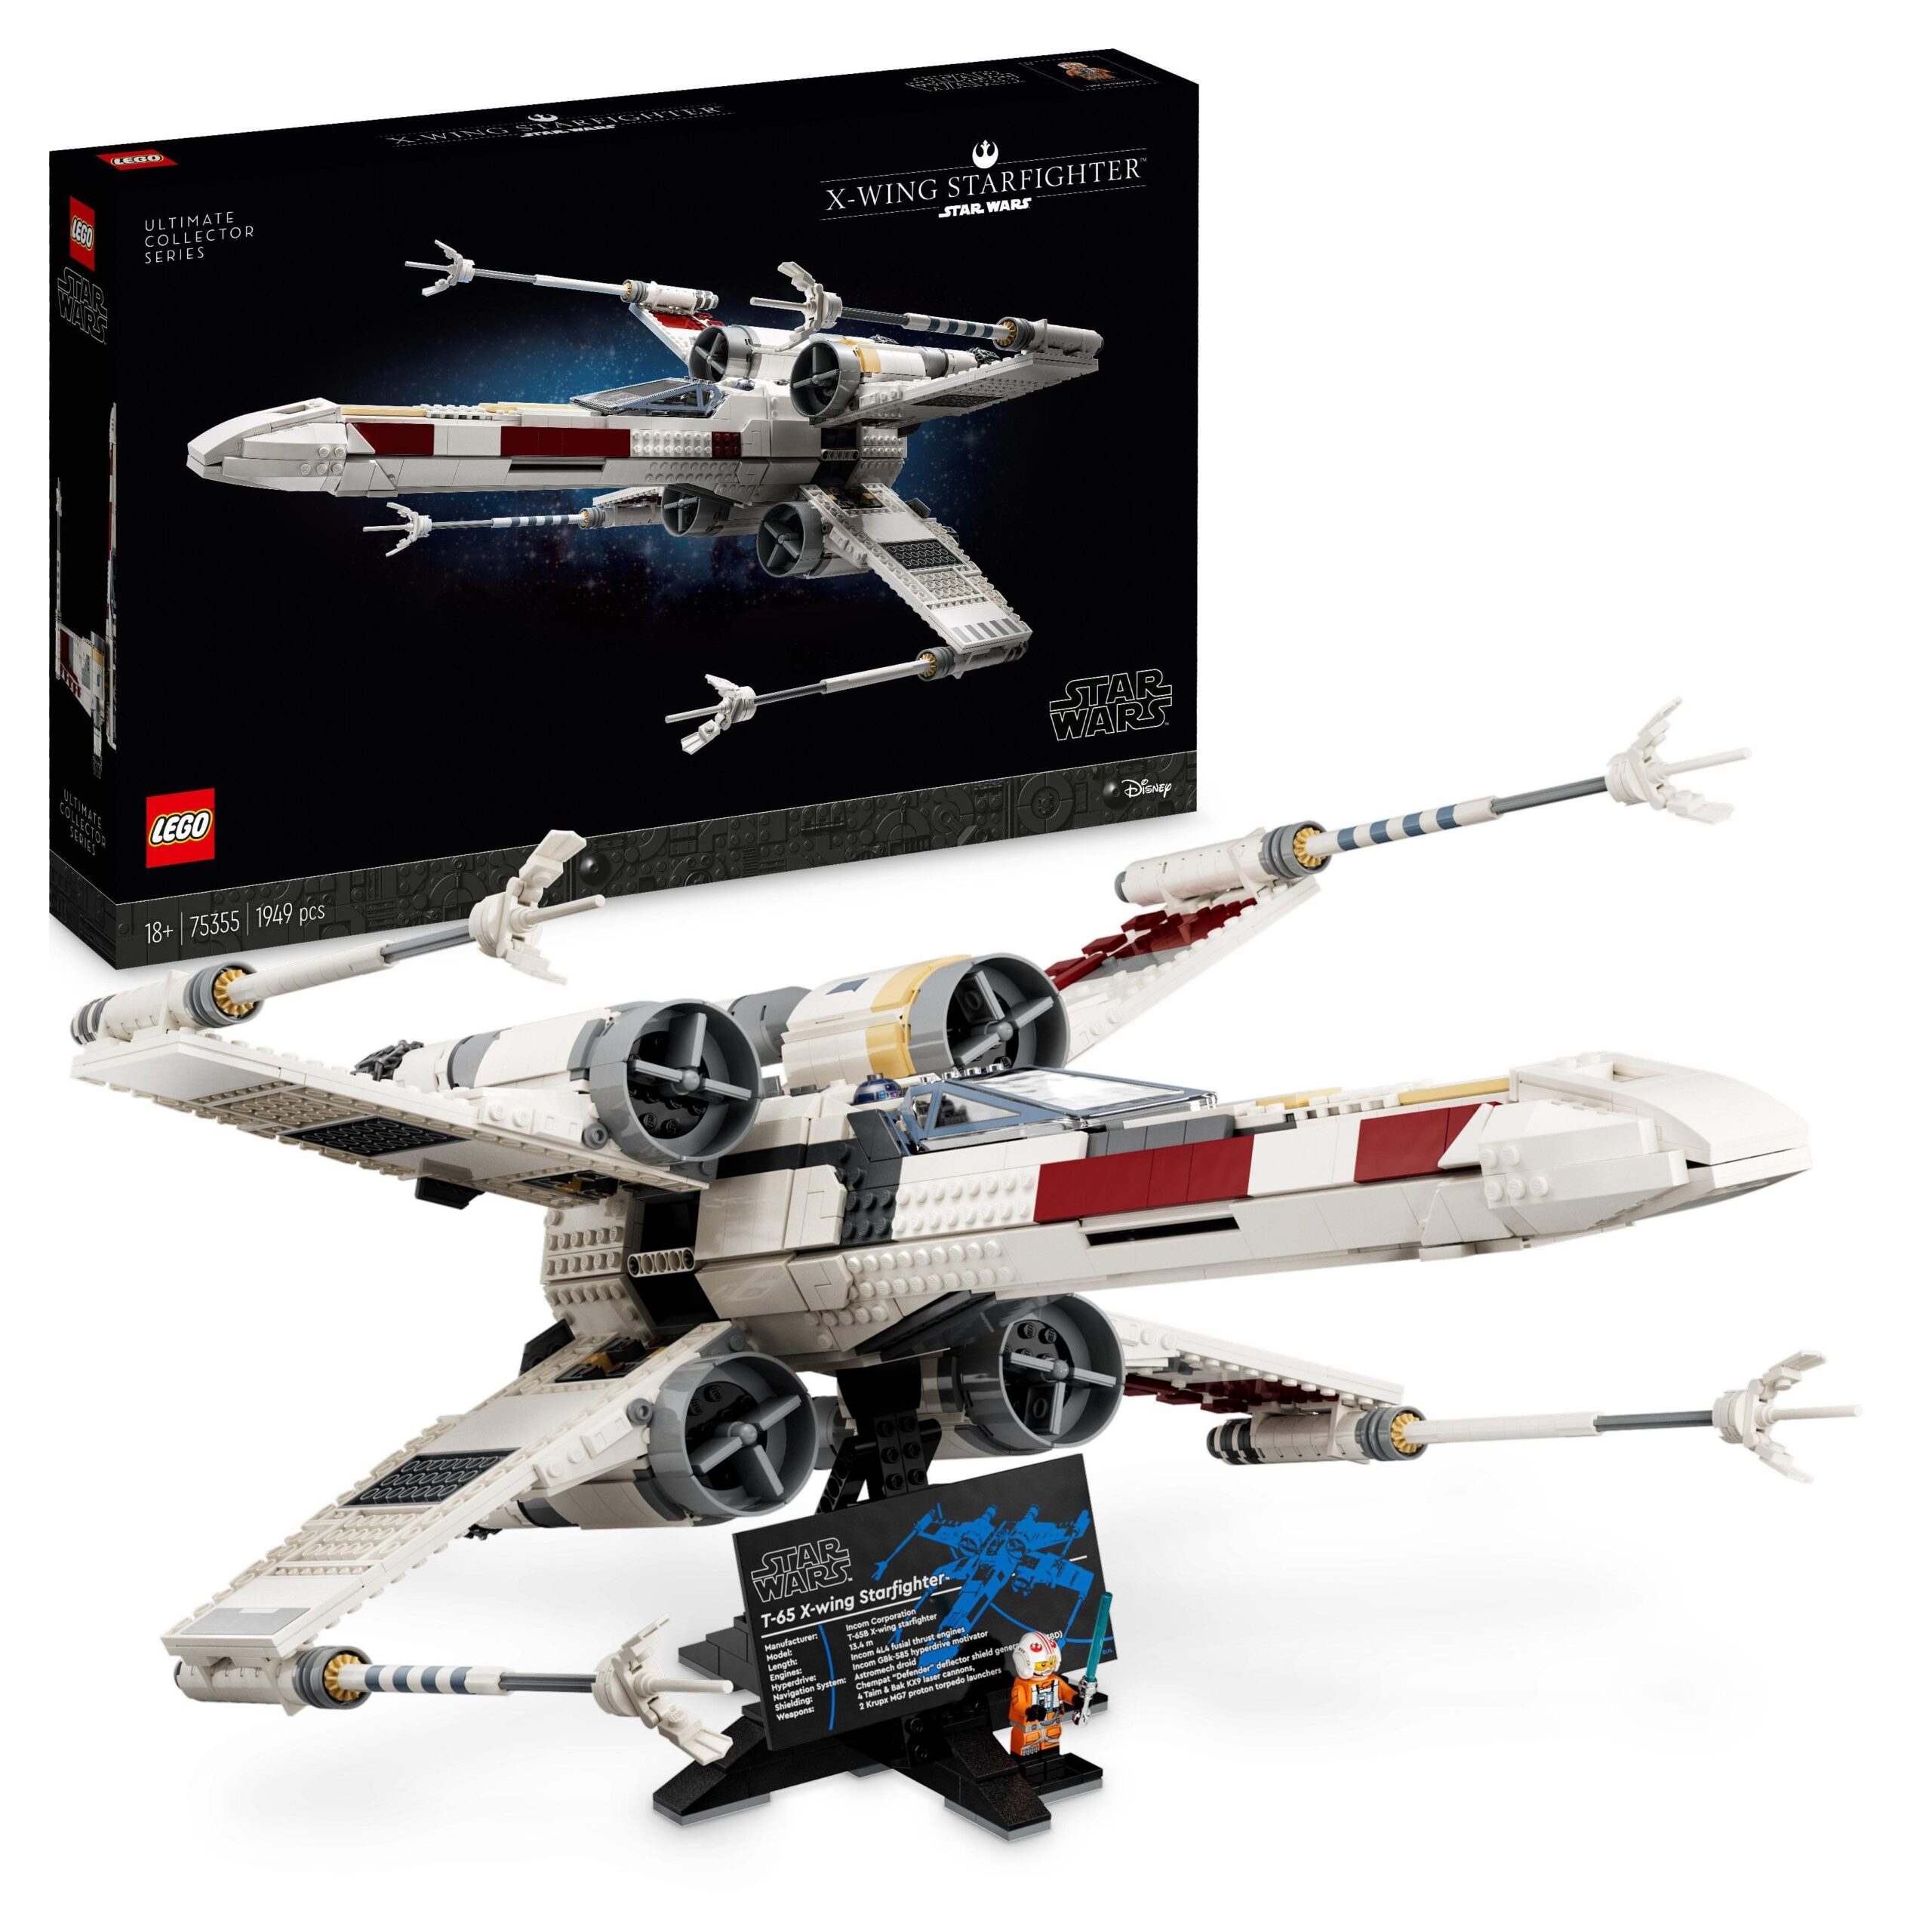 Lego star wars 75355 x-wing starfighter, modellino da costruire ultimate collectors series per adulti con luke skywalker e r2-d2 - LEGO® Star Wars™